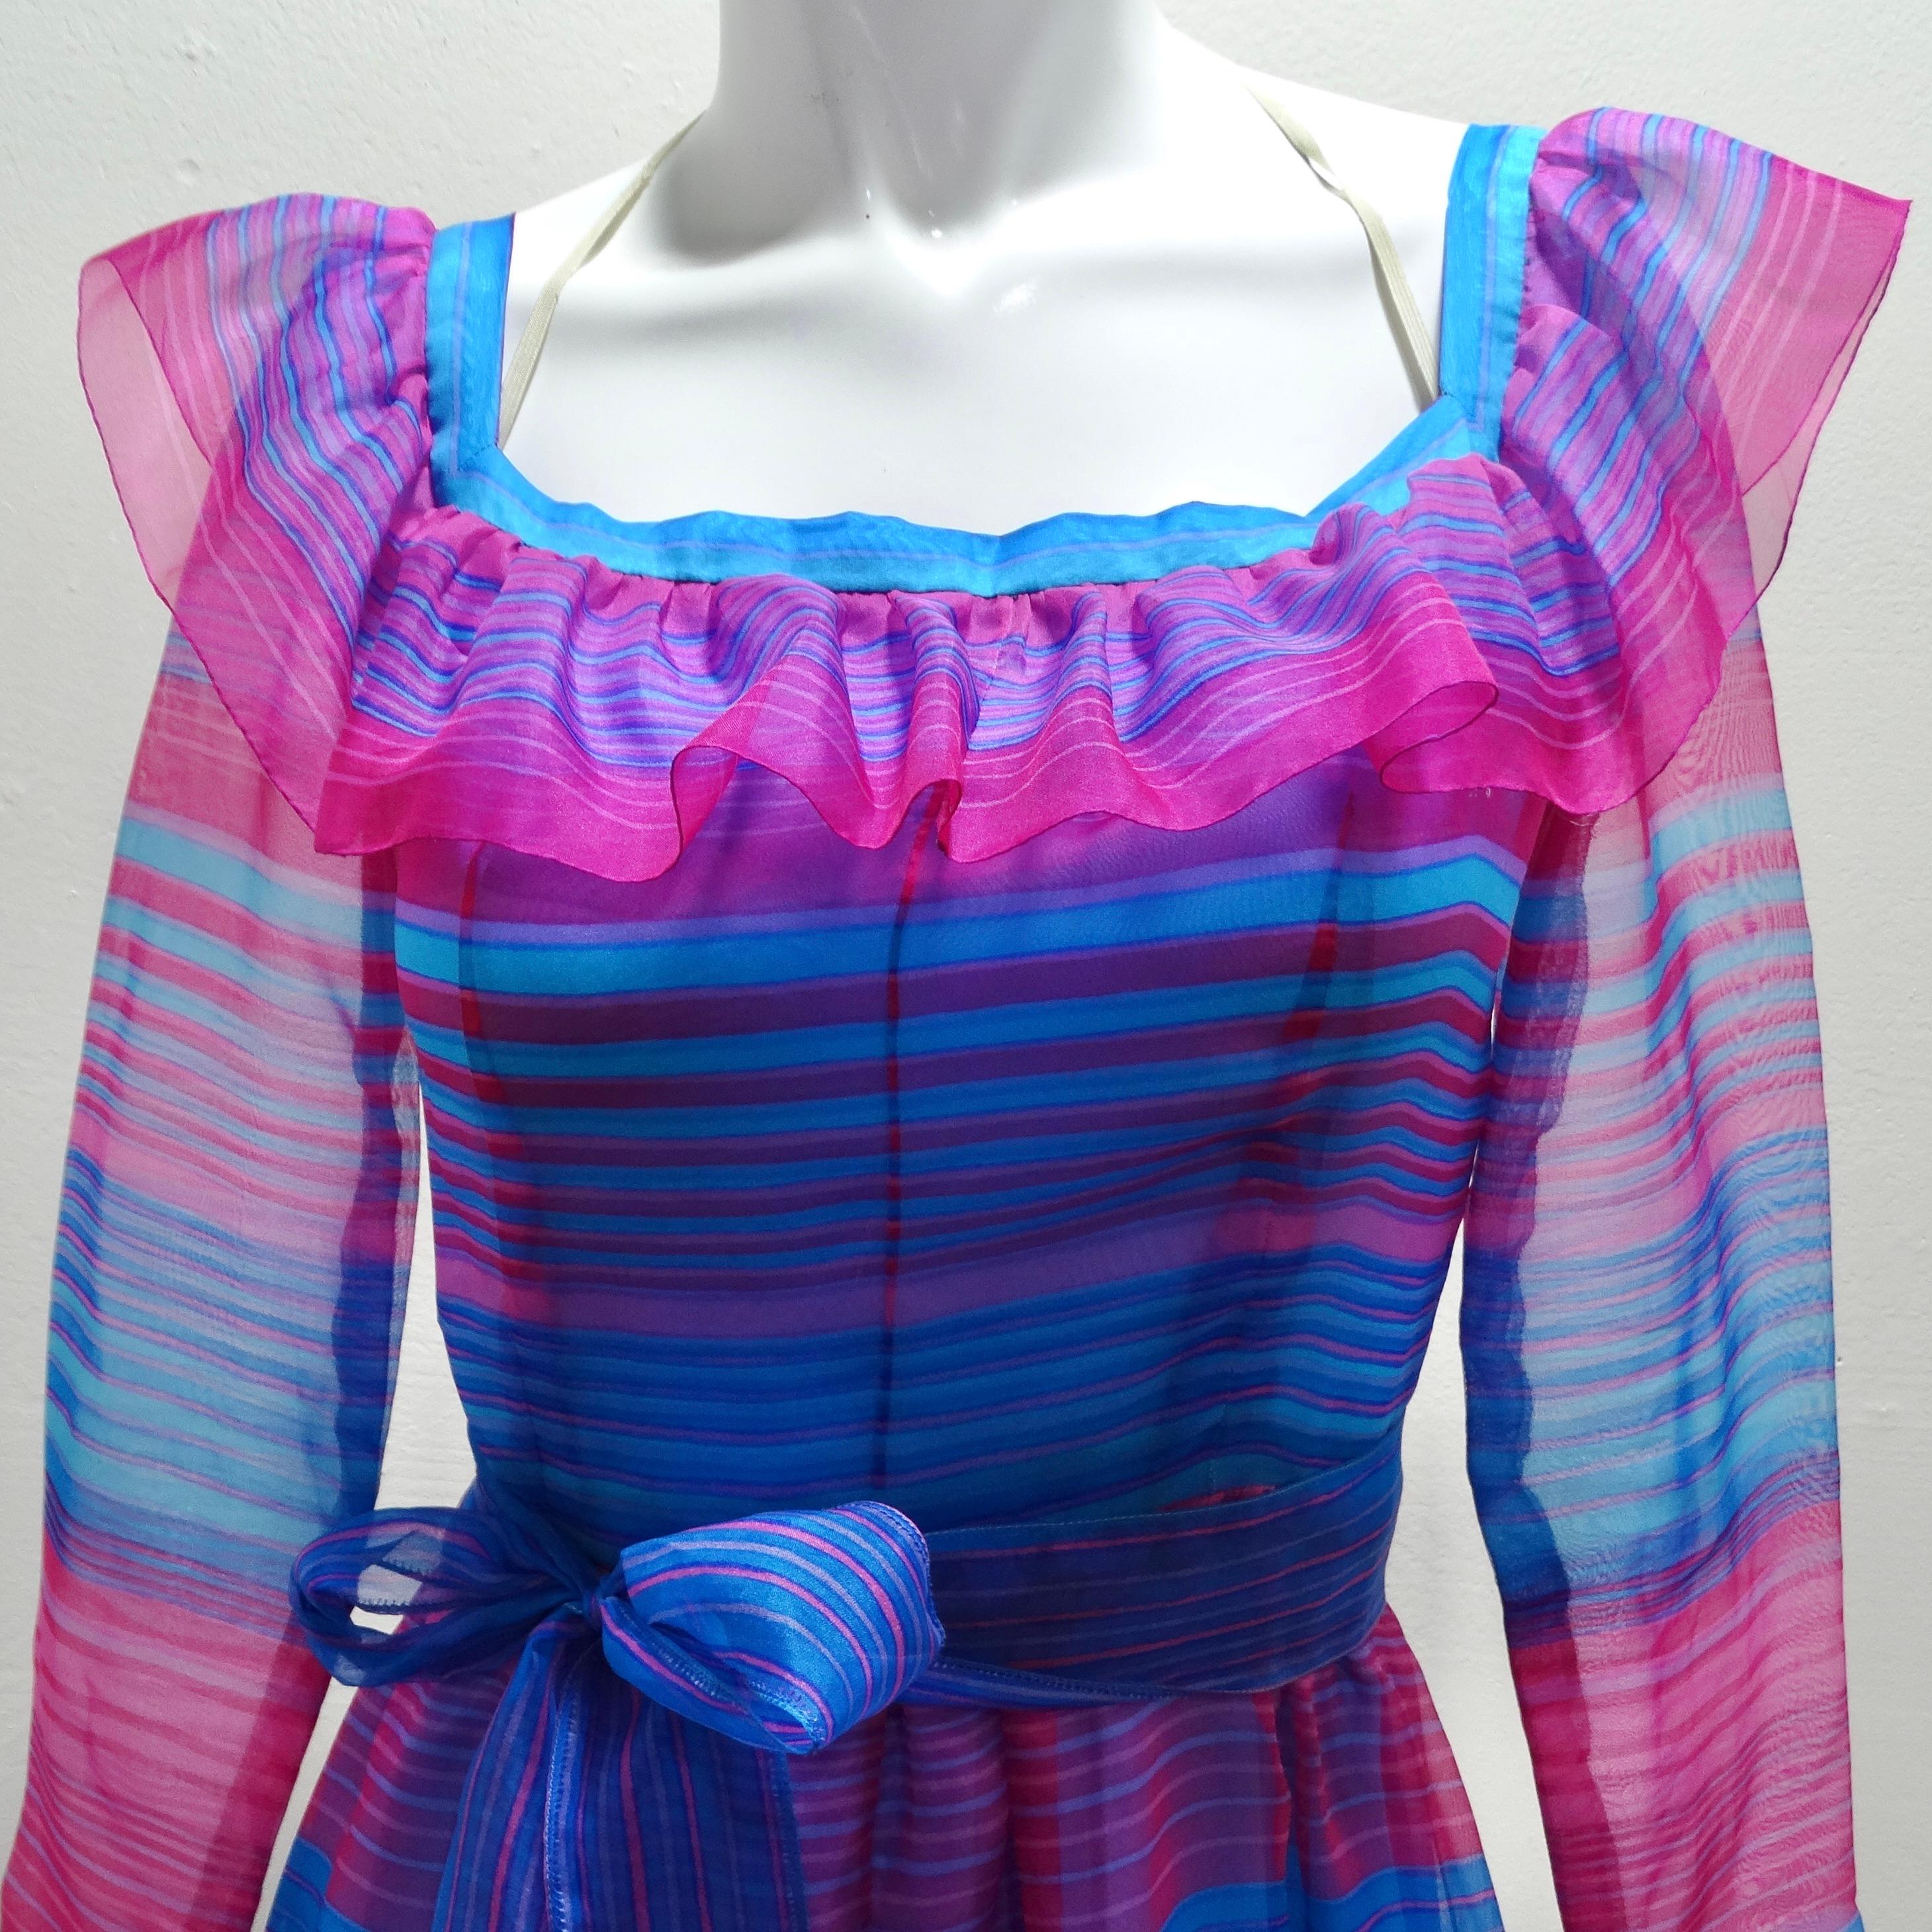 Tauchen Sie ein in den Glamour der 1980er Jahre mit dem Givenchy 1980s Pink & Blue Stripe Dress, einem lebhaften und verspielten Maxikleid, das die Essenz dieser Ära einfängt. Dieses auffällige Kleid mit seinen kräftigen rosa und blauen Streifen